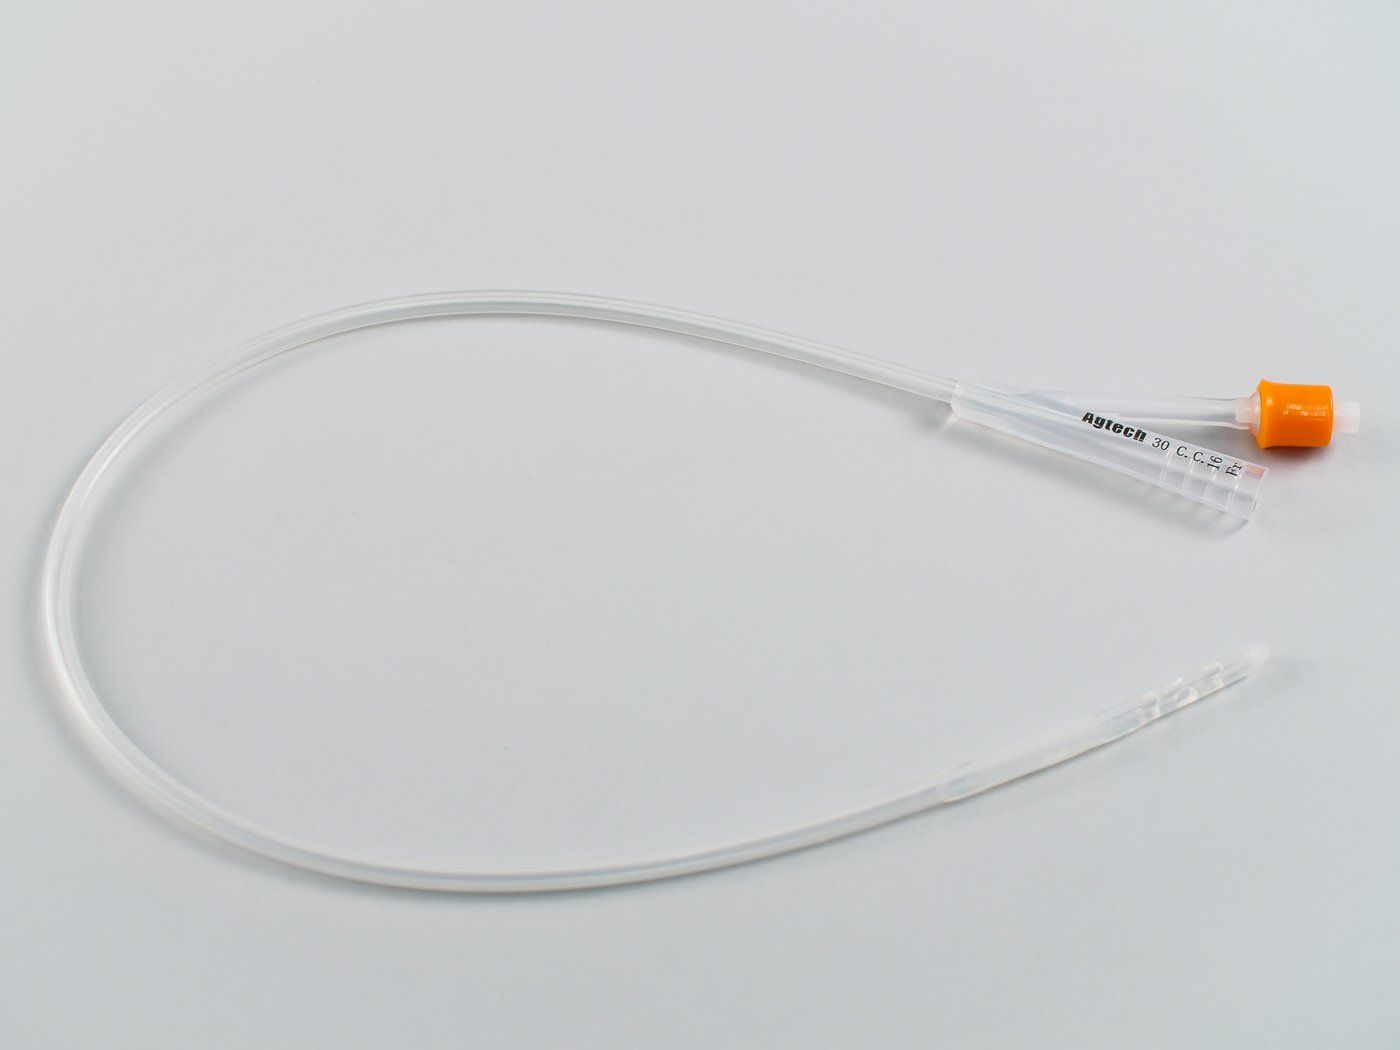 40054 vortech siliconen catheter voor runder et 16fr 30cc ballon 584cm e101